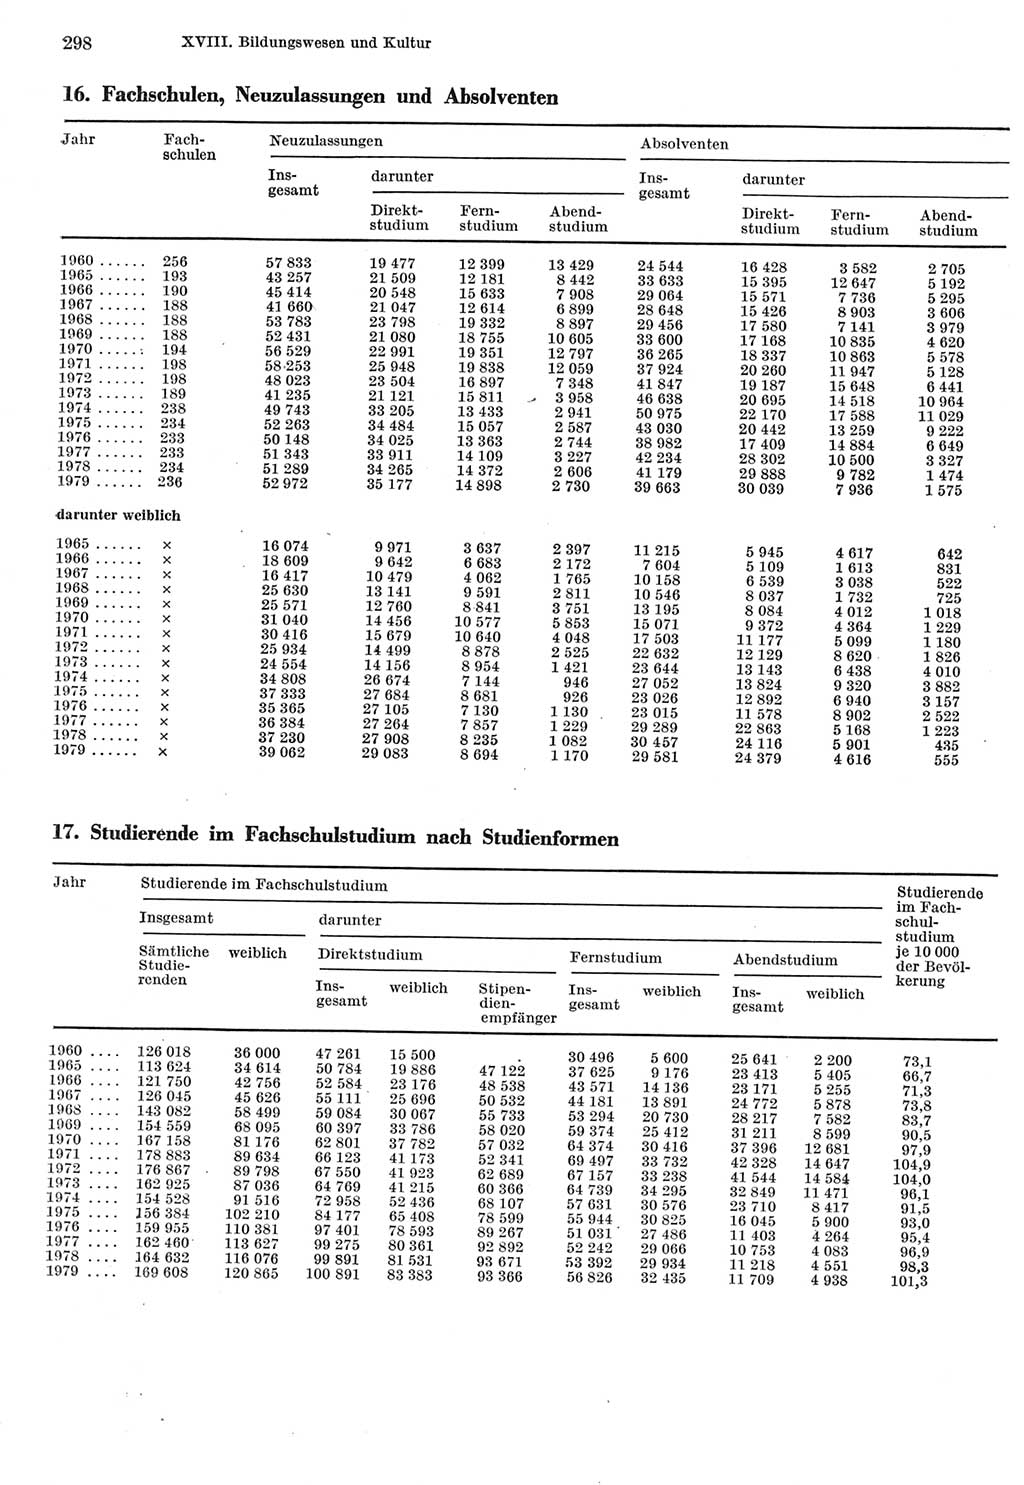 Statistisches Jahrbuch der Deutschen Demokratischen Republik (DDR) 1980, Seite 298 (Stat. Jb. DDR 1980, S. 298)